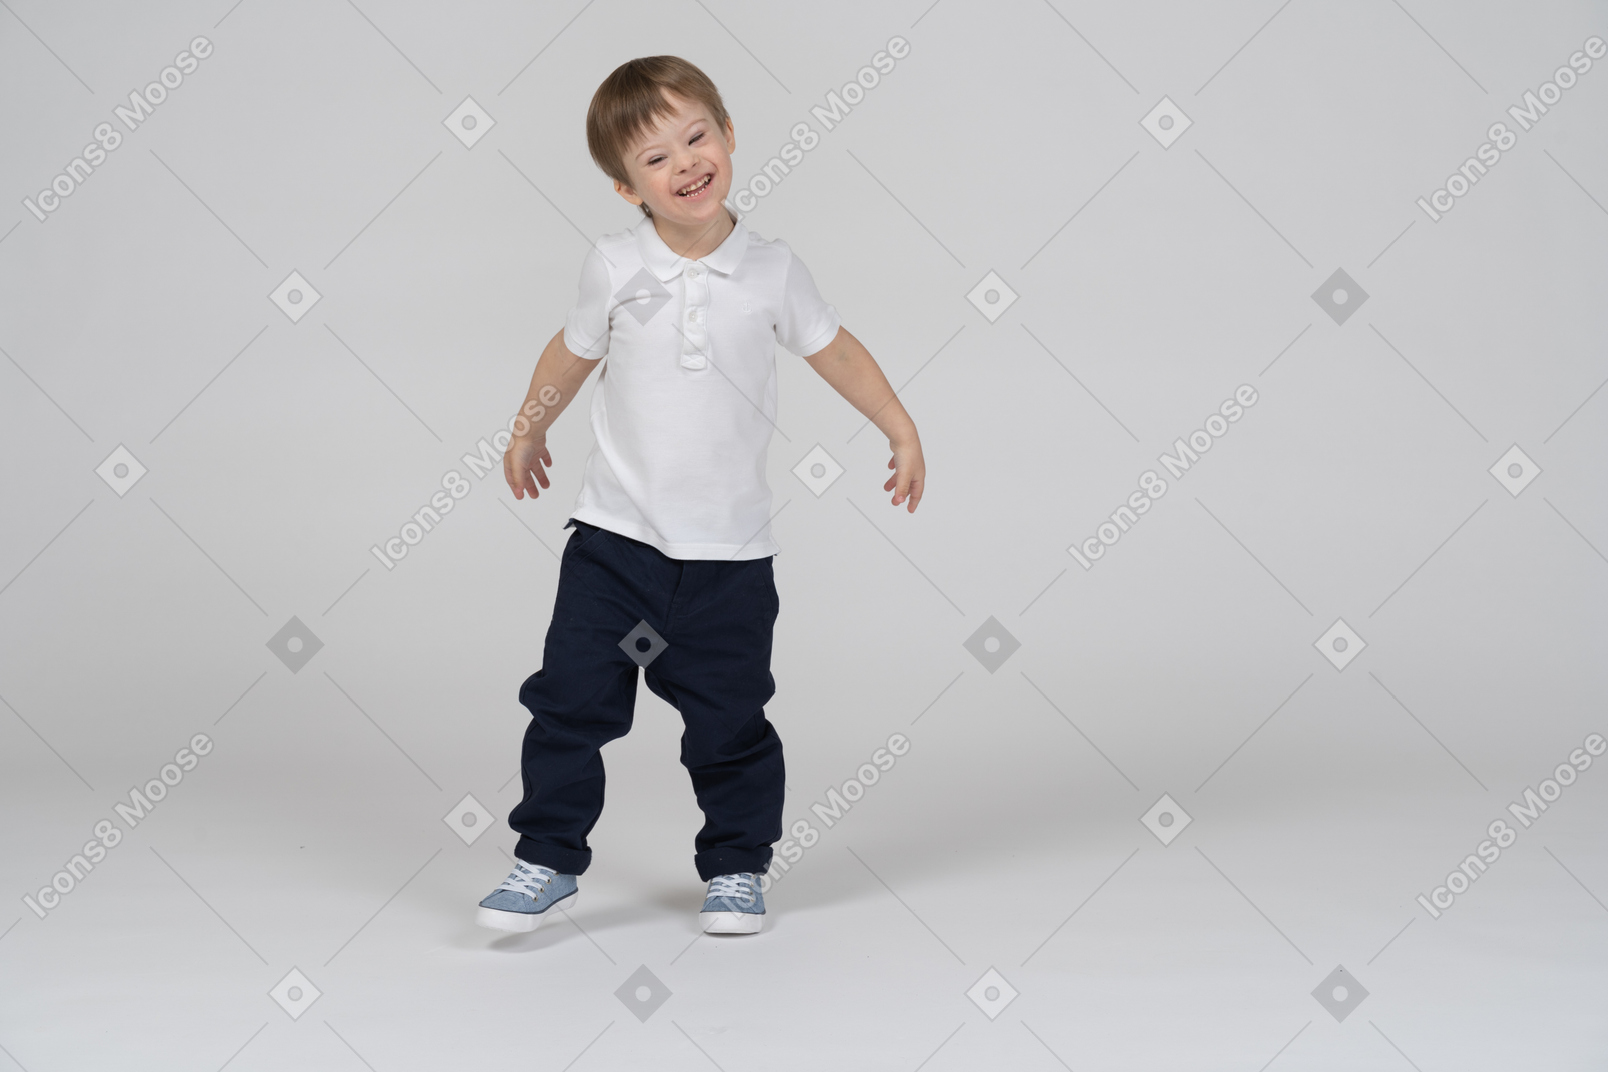 Enfant heureux marchant et balançant ses bras